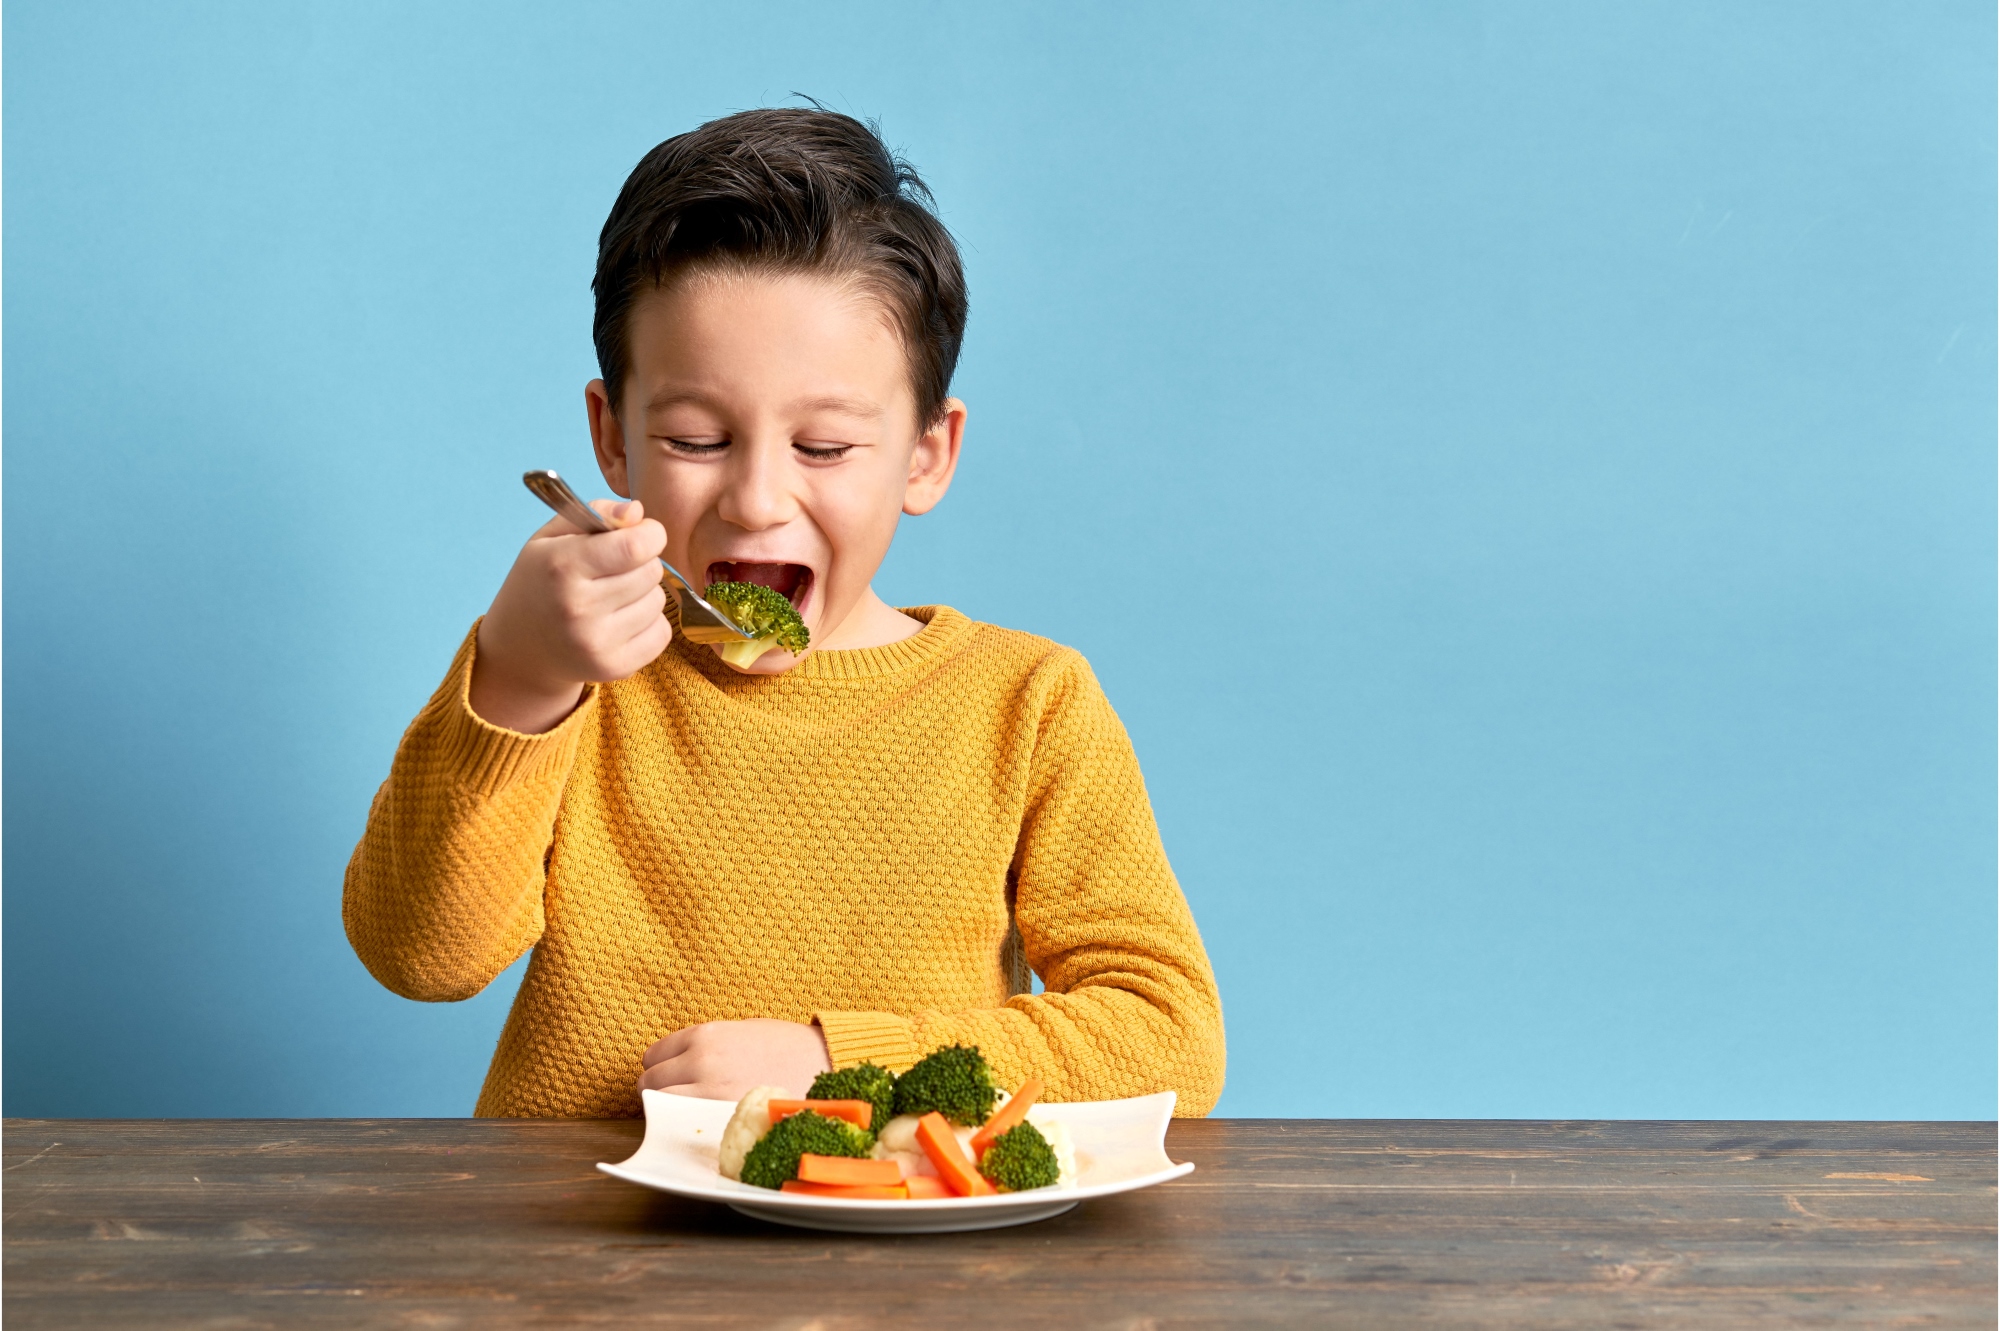 jongetje eet met plezier van een brod met groente